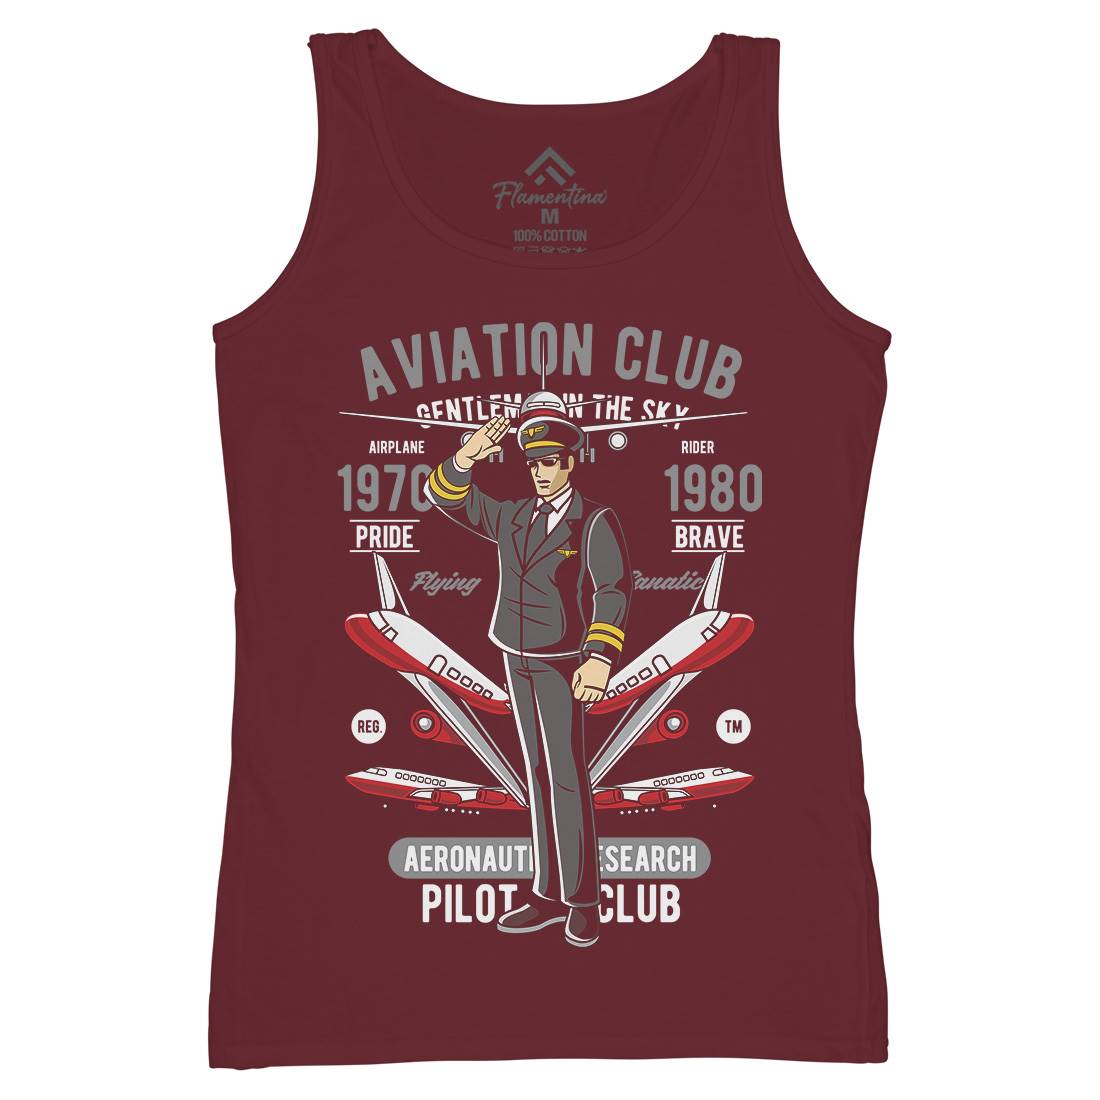 Aviation Club Womens Organic Tank Top Vest Sport C309